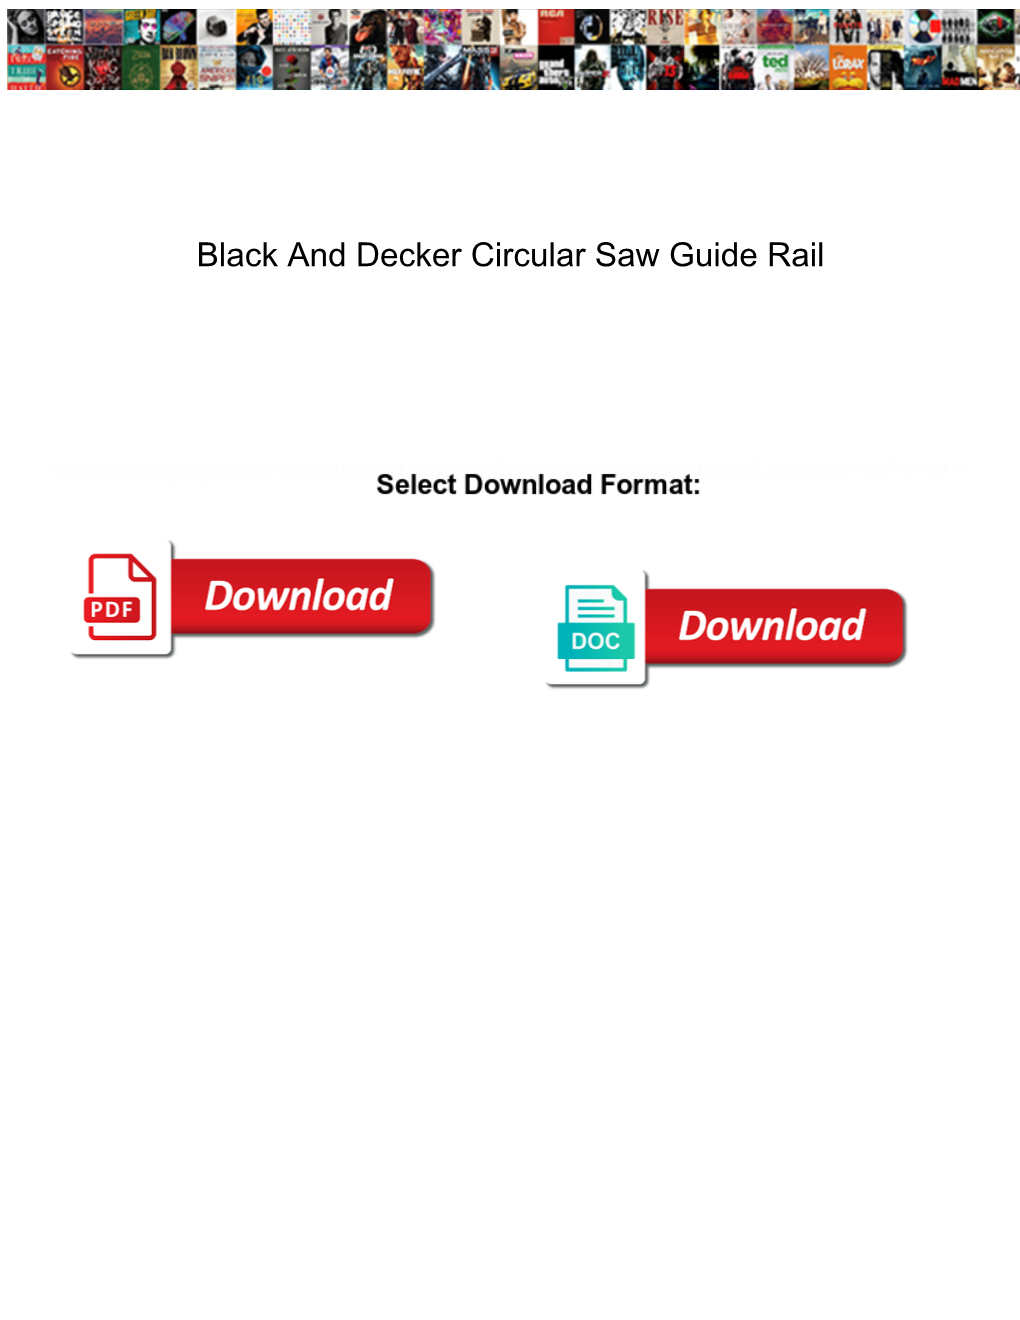 Black and Decker Circular Saw Guide Rail